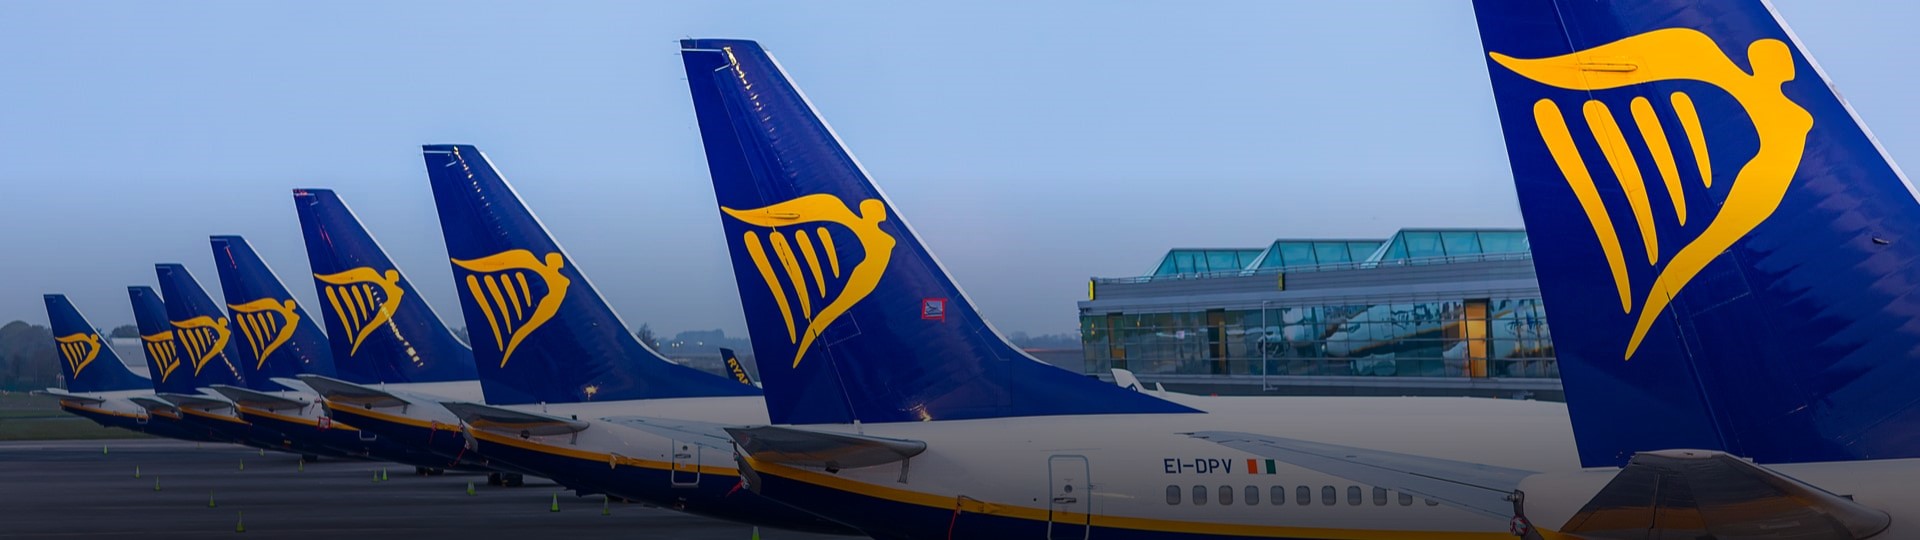 Ryanair čeká robustní oživení letecké přepravy